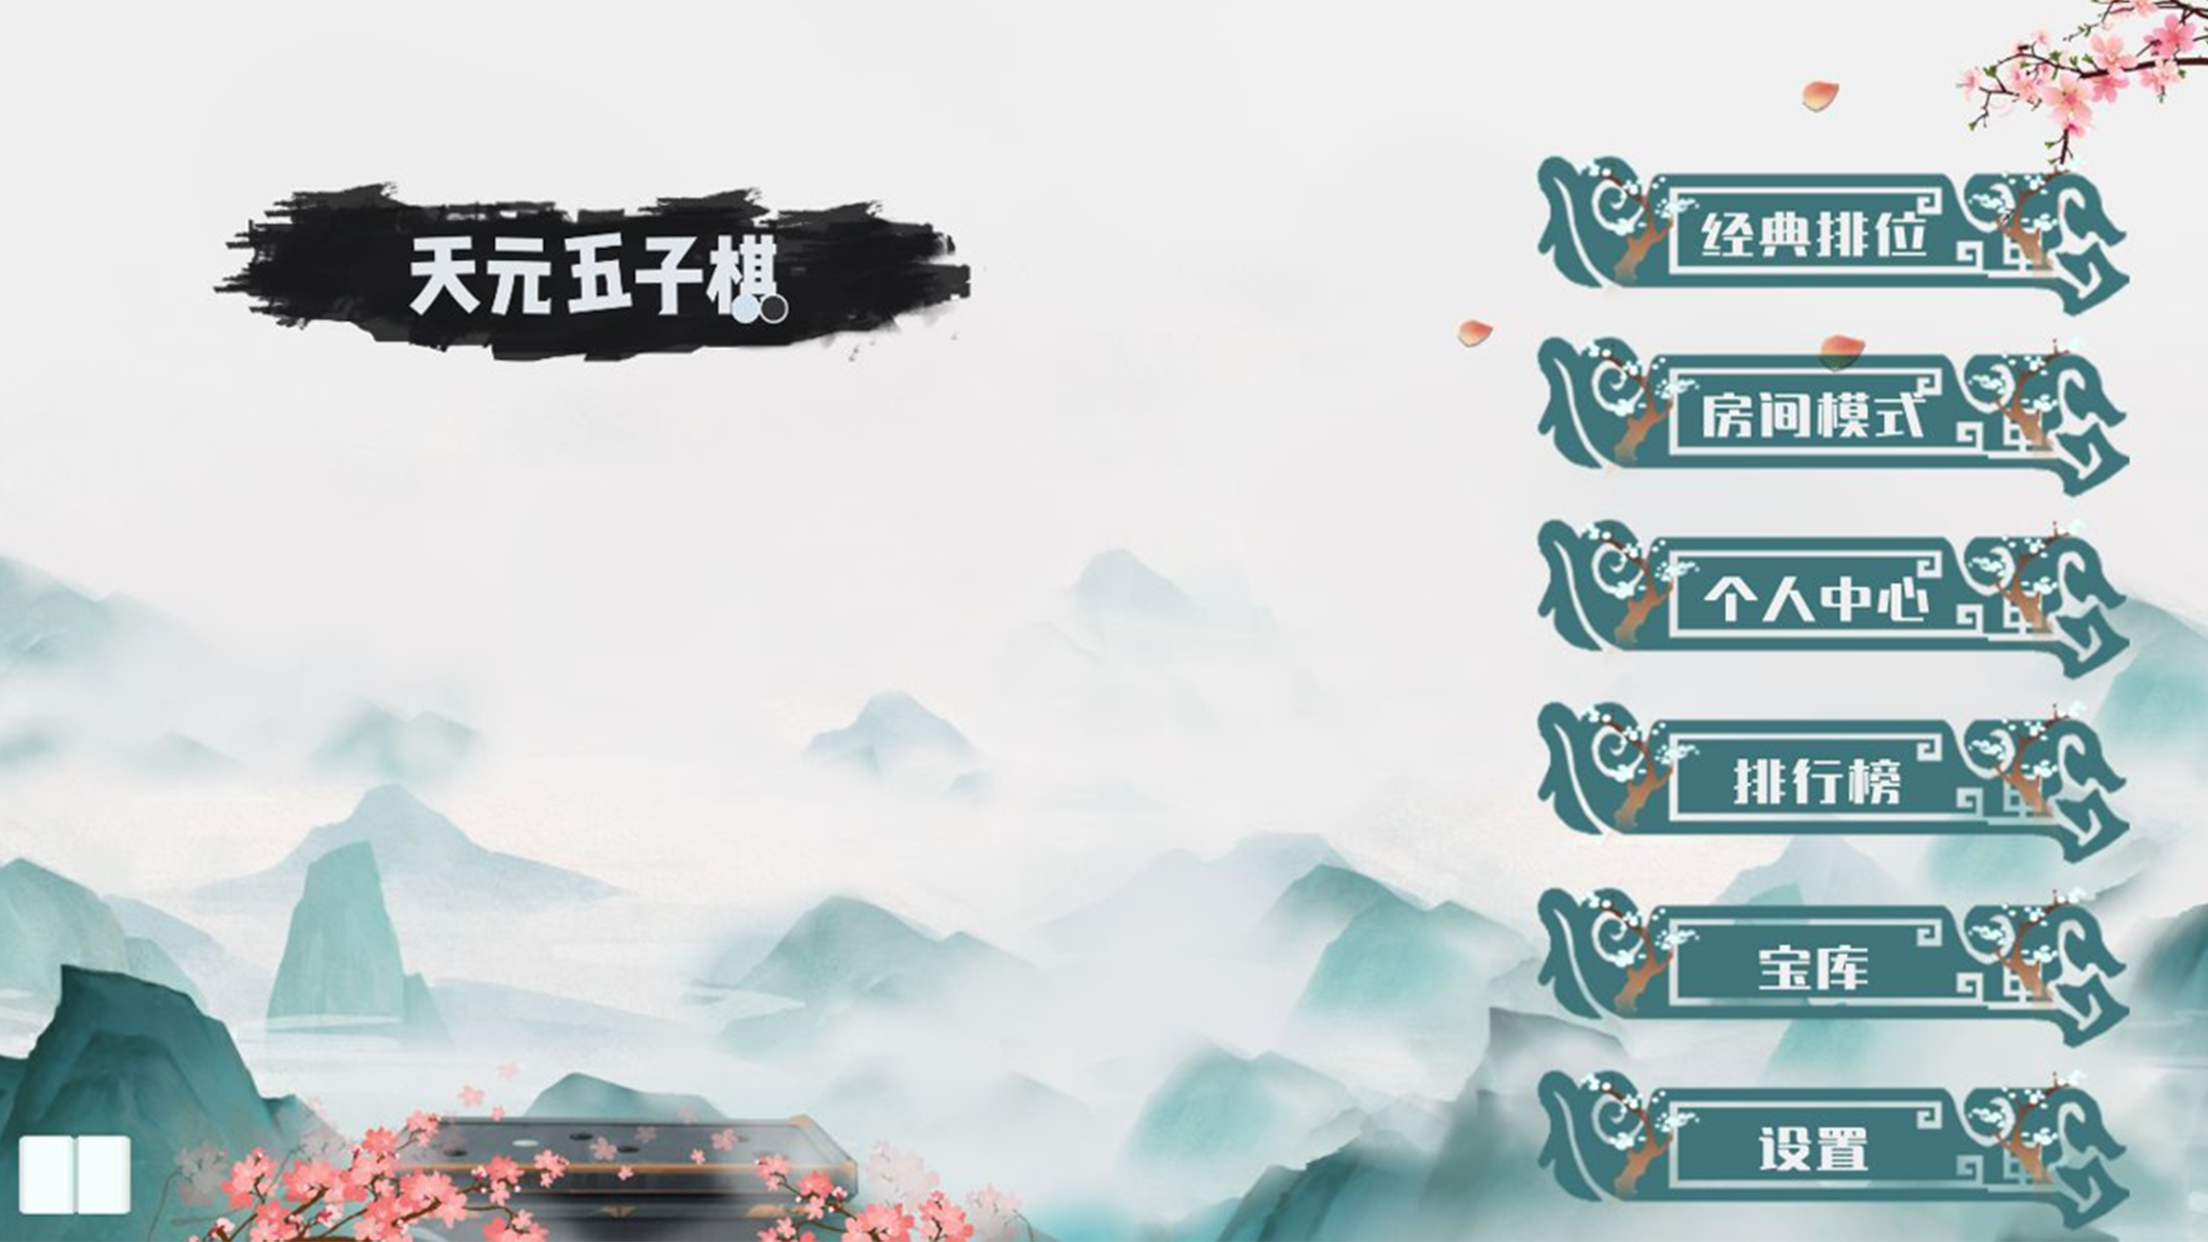 Screenshot 1 of Tian Yuan backgammon 